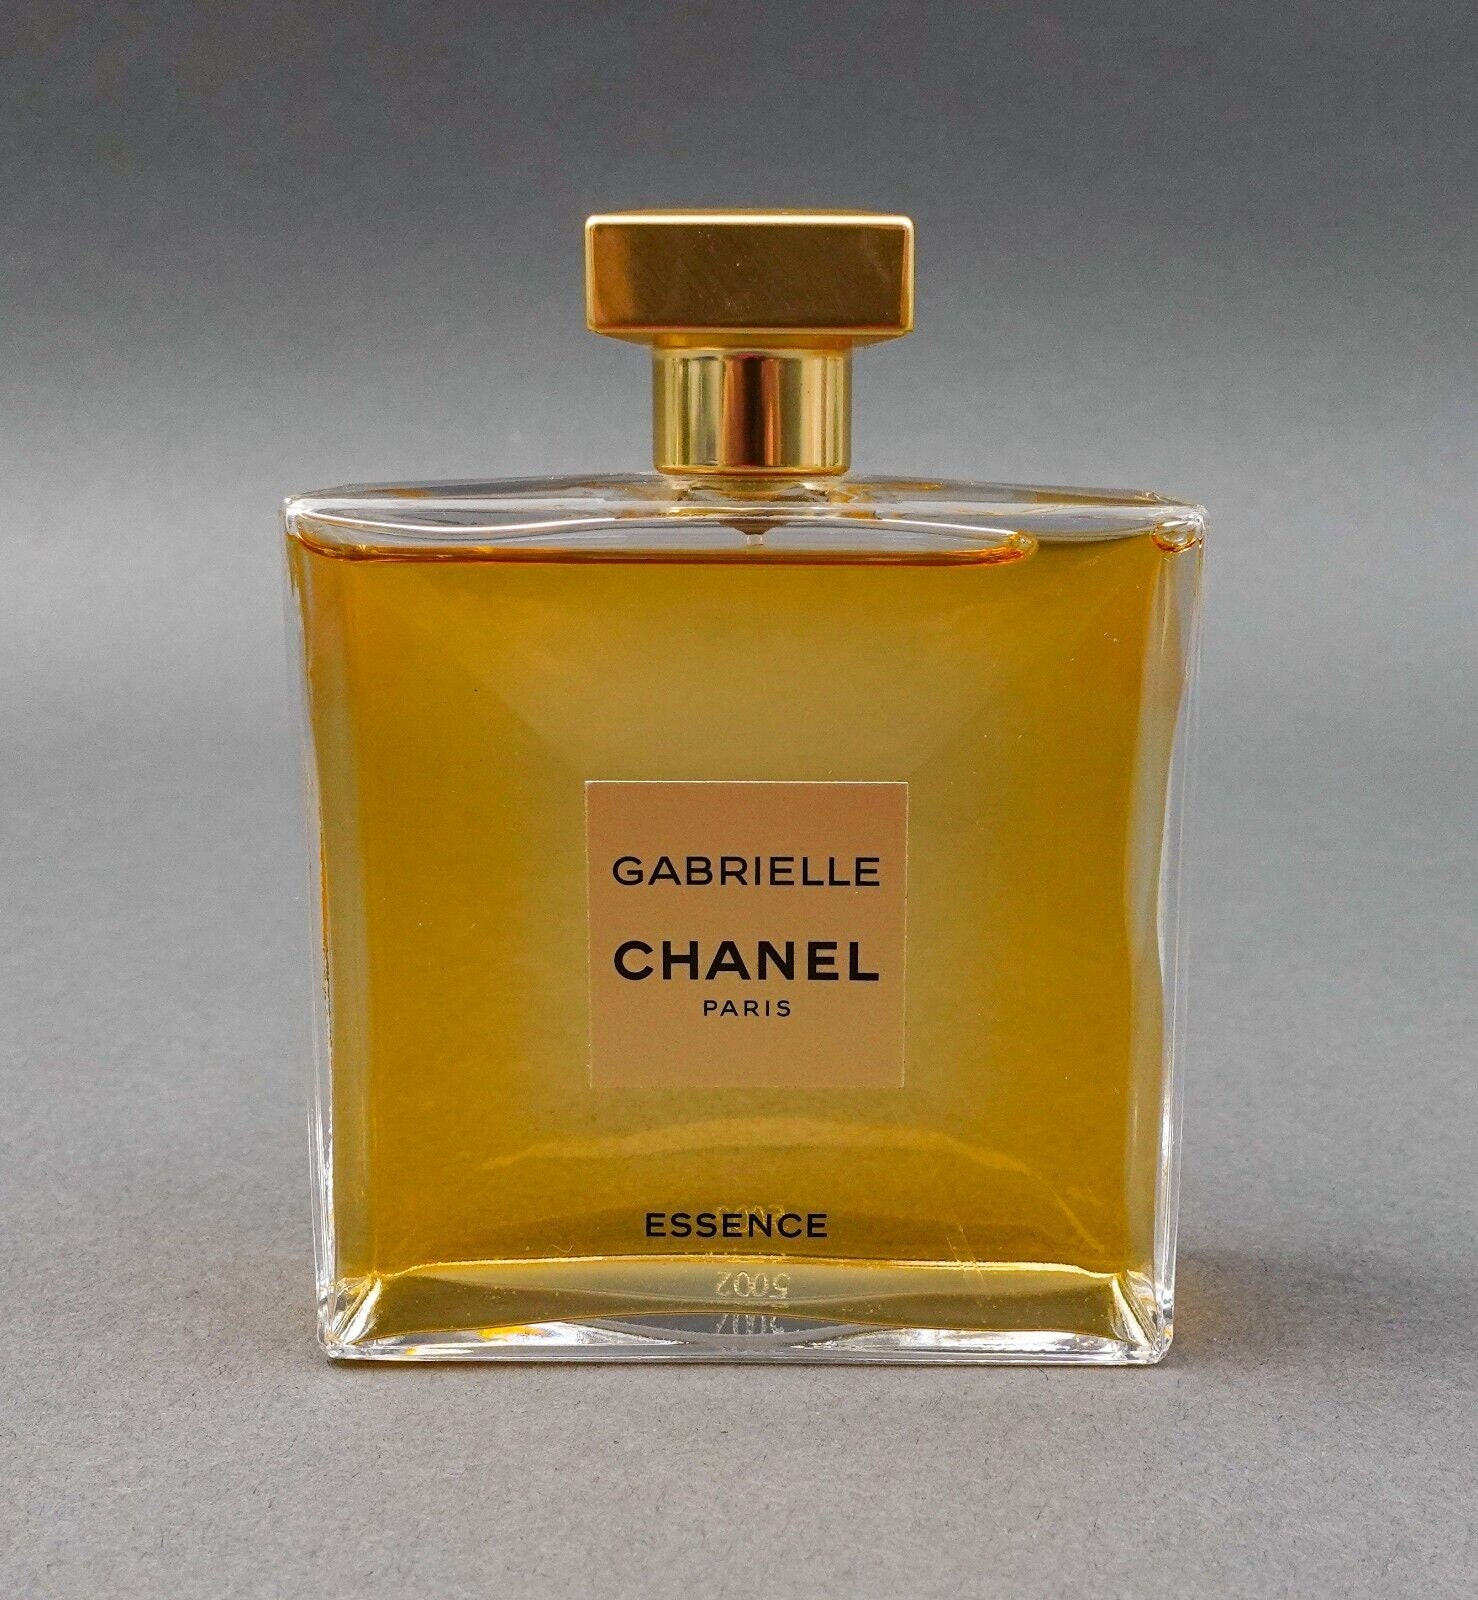 Gabrielle Essence by Chanel Eau De Parfum Spray 3.4 oz / 100 ml Women